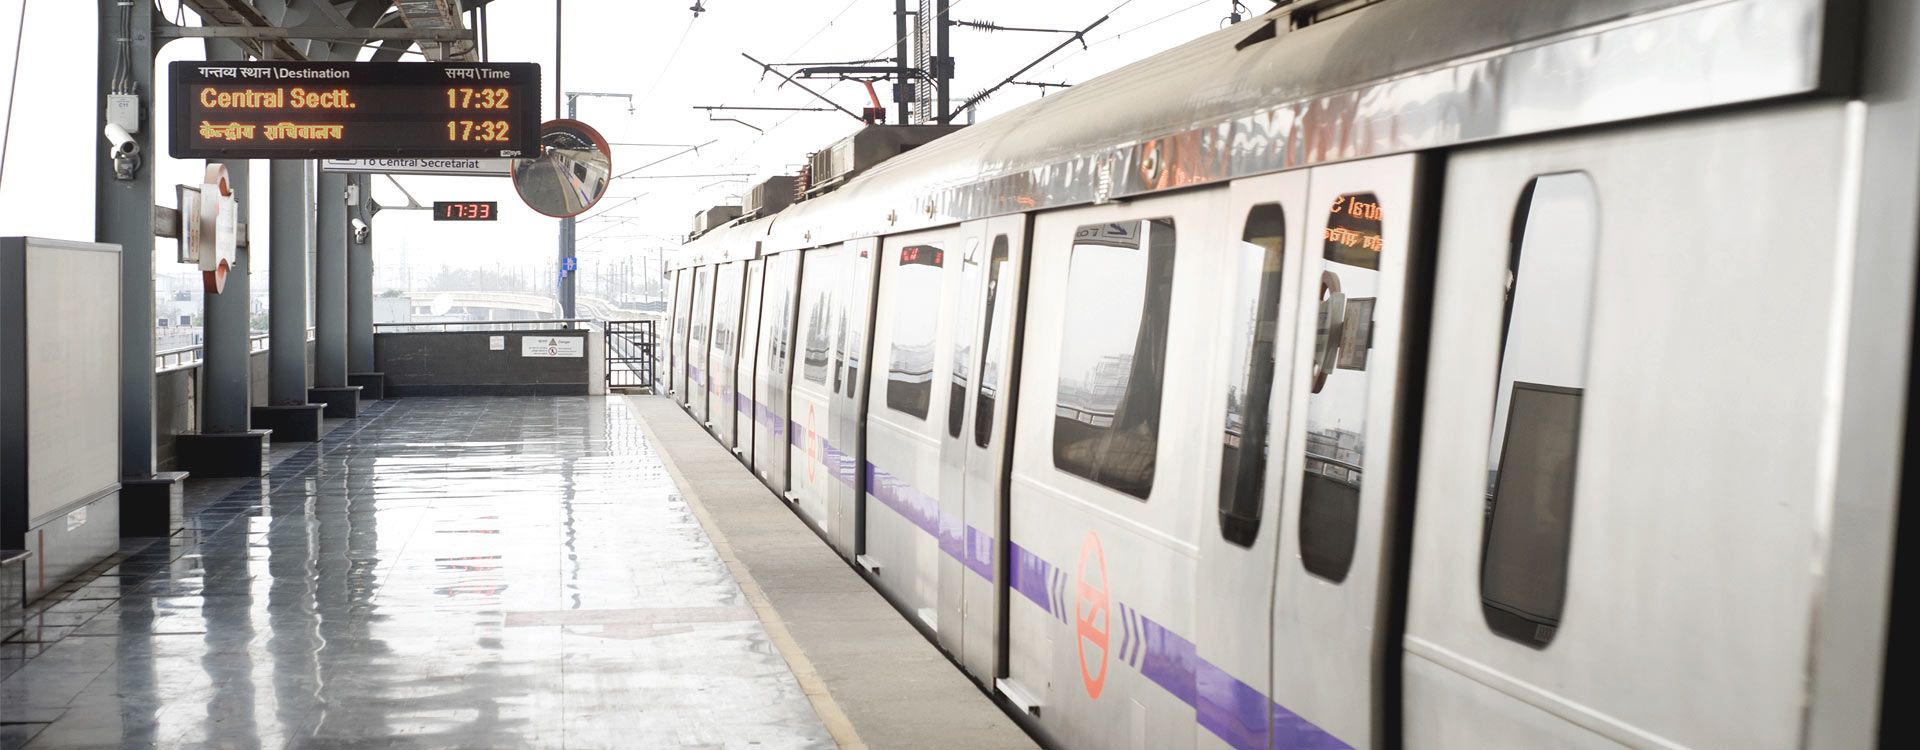 bnr-Delhi-Metro_Transport-and-Infrastructure